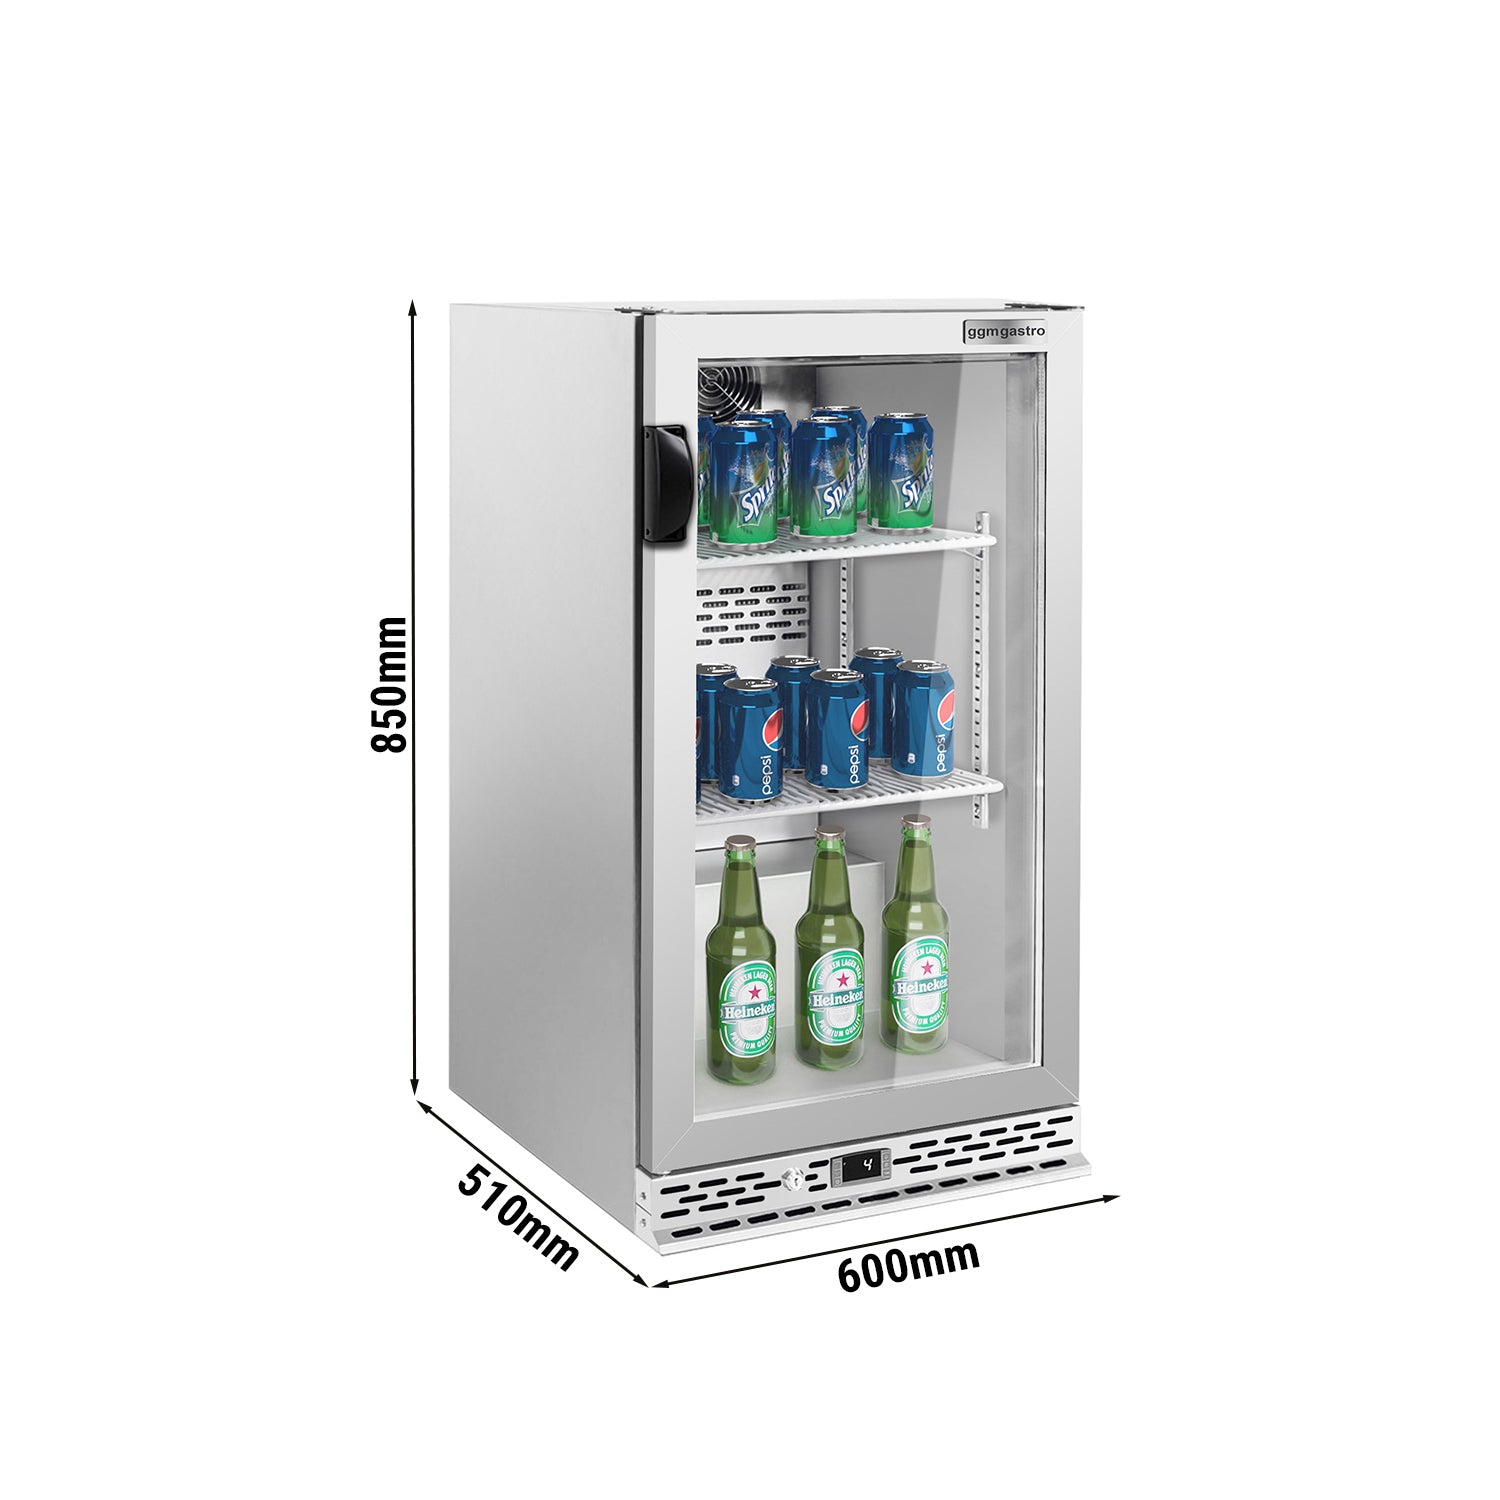 Хладилна маса за бар напитки - 0,6 x 0,51 m - 125 литра - с 1 стъклена врата - неръждаема стомана